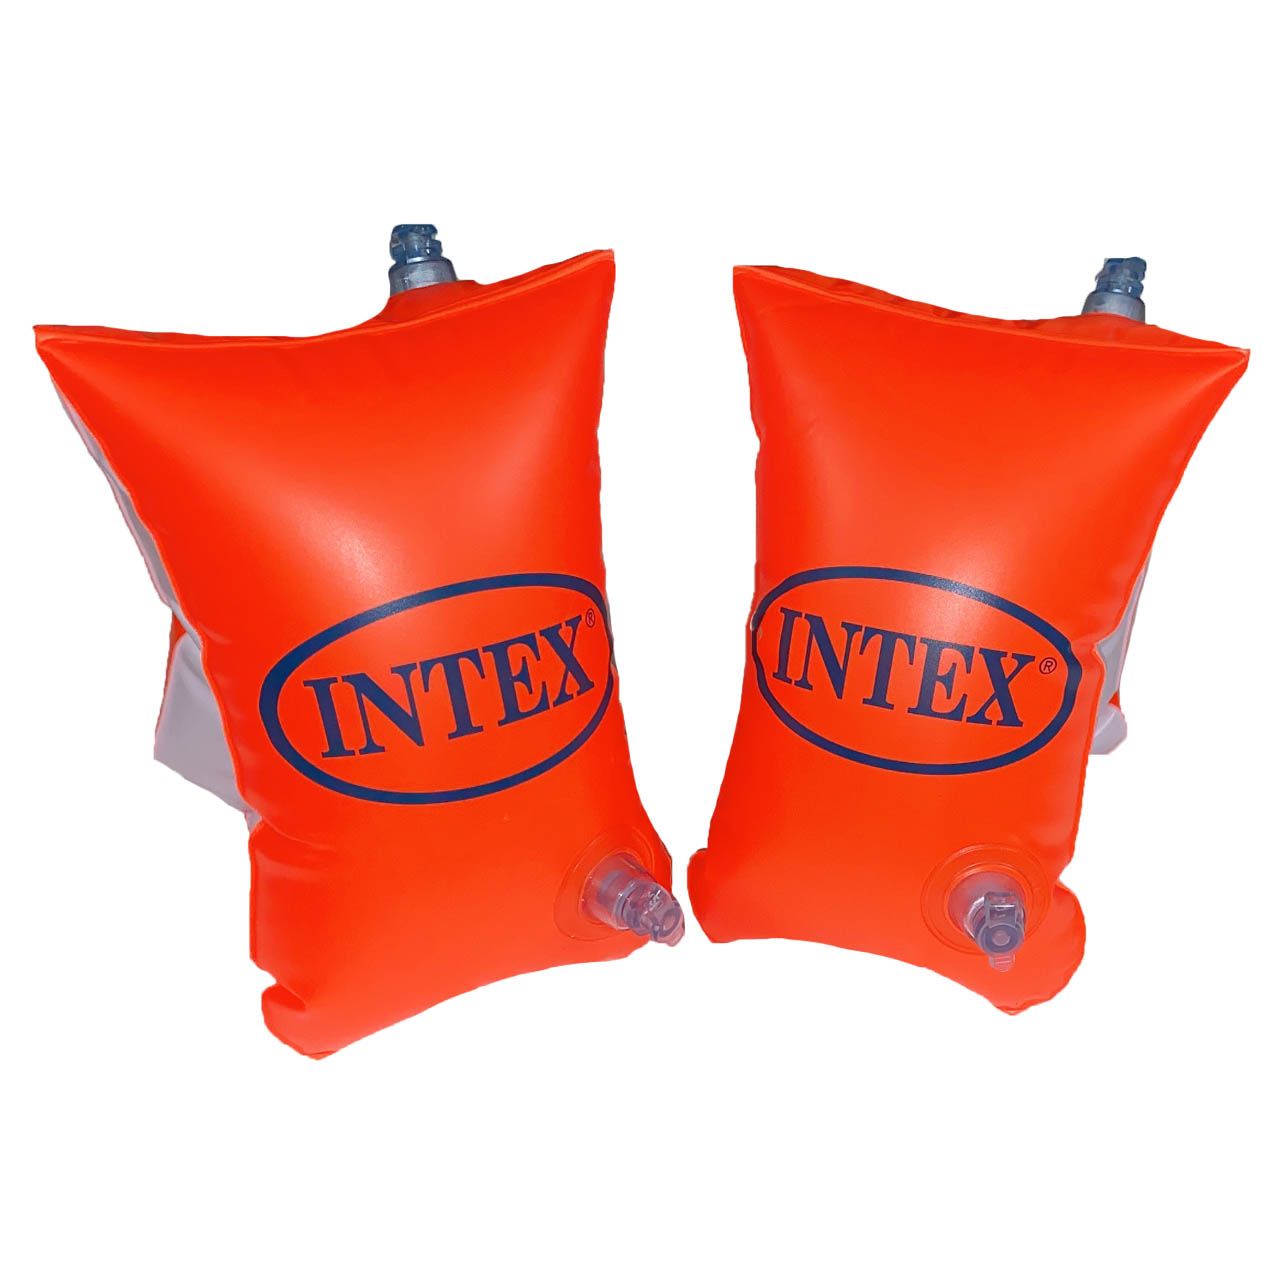 بازوبند شنا بادی اینتکس  مدل INTEX6-12 بسته 2 عددی -  - 2